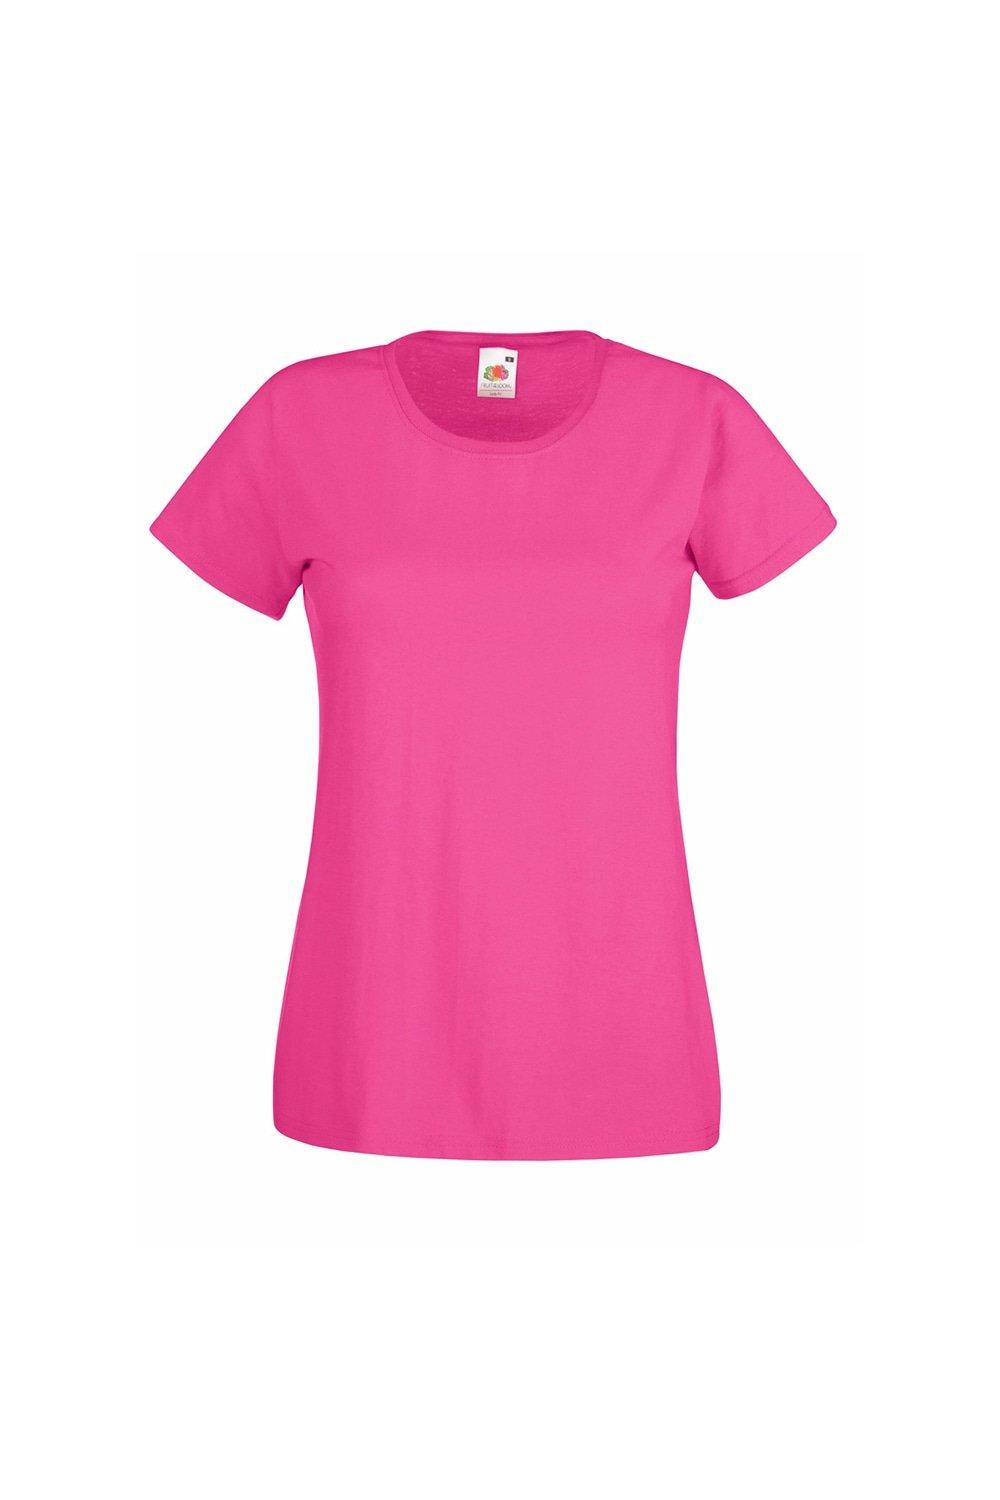 Повседневная футболка с короткими рукавами Value Universal Textiles, розовый повседневная футболка value с длинным рукавом universal textiles белый